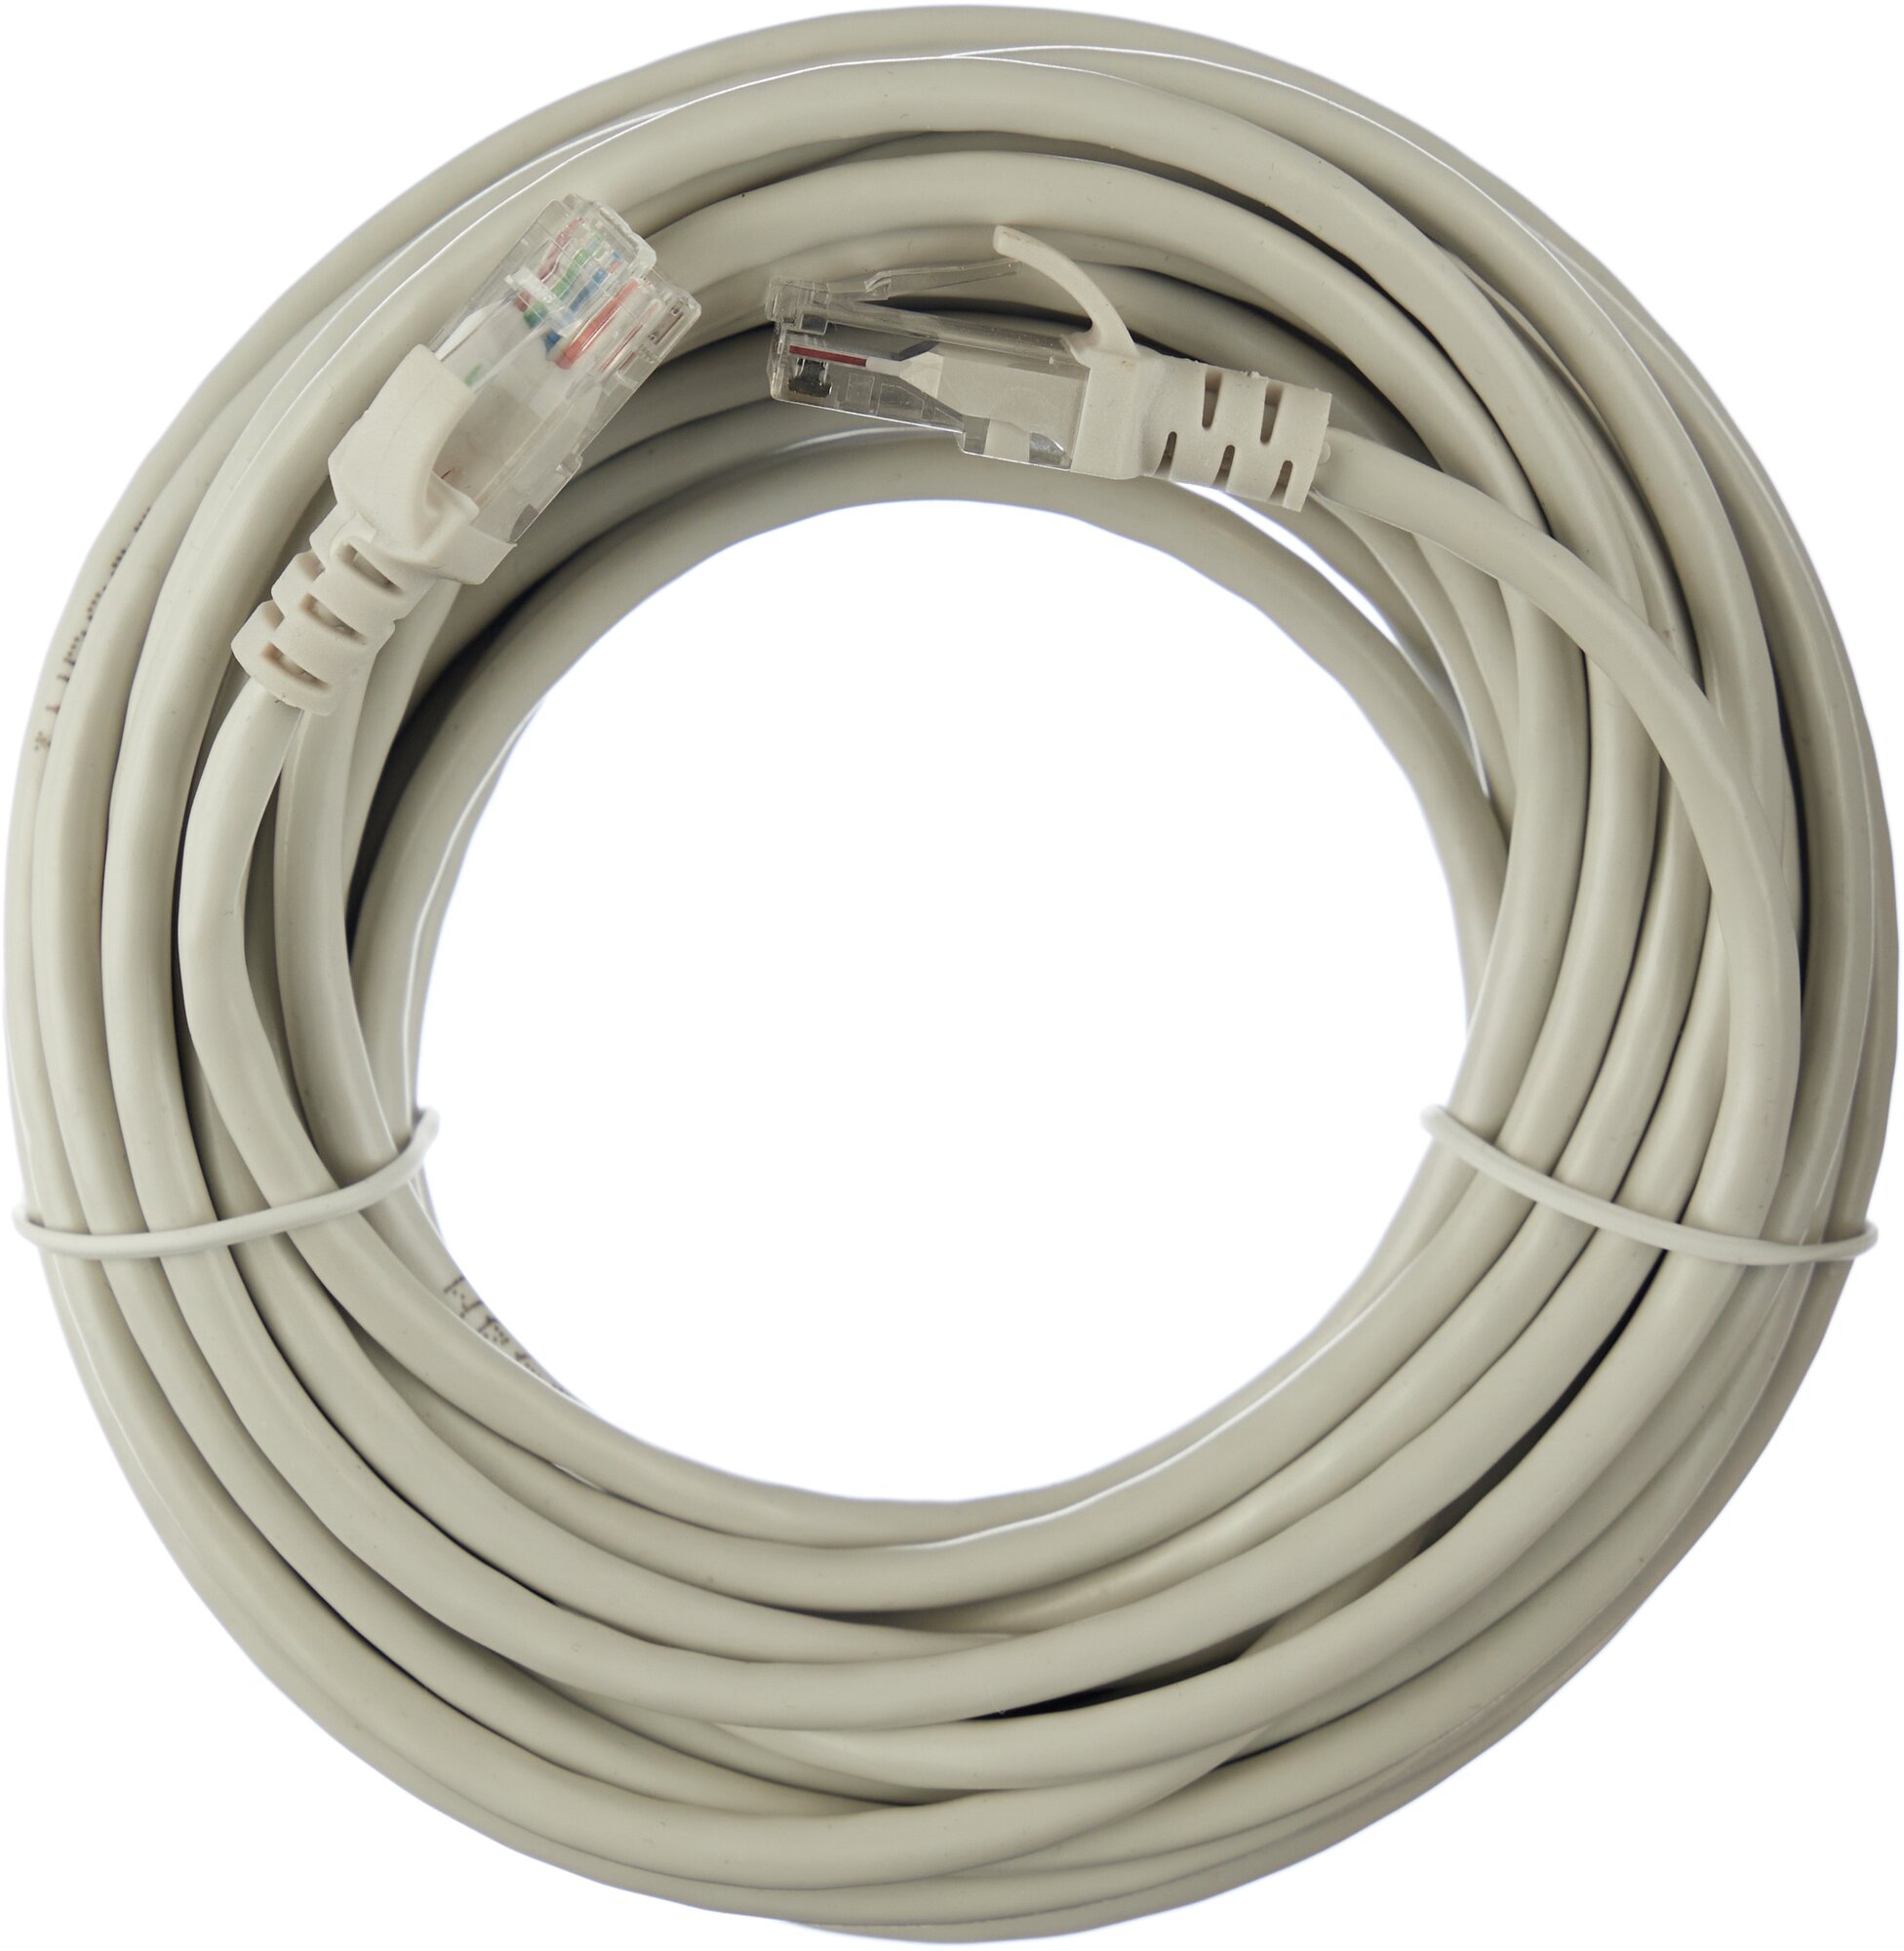 LAN кабель витая пара ZDK Внутренний CCA, интернет кабель для использования внутри помещения,10 метров, серый